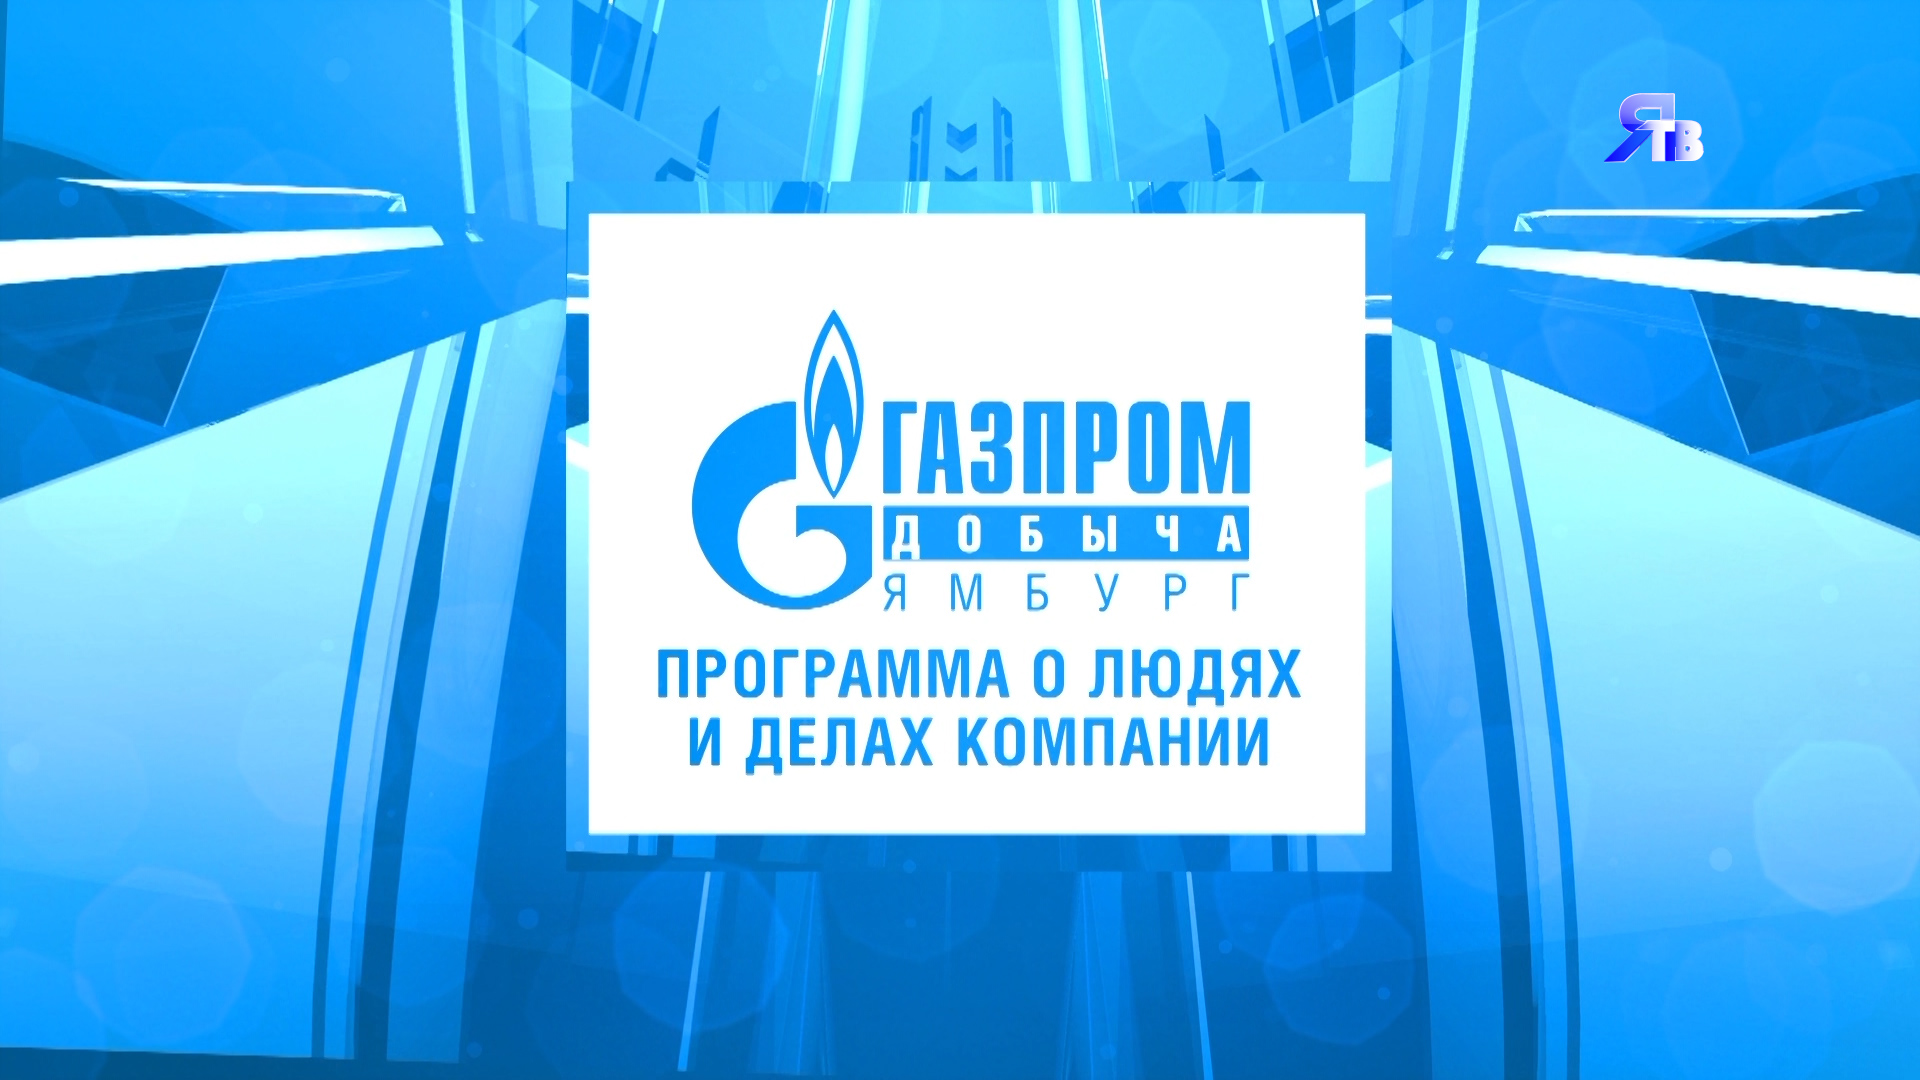 29 августа / Программа о людях и делах компании ООО "Газпром добыча Ямбург"